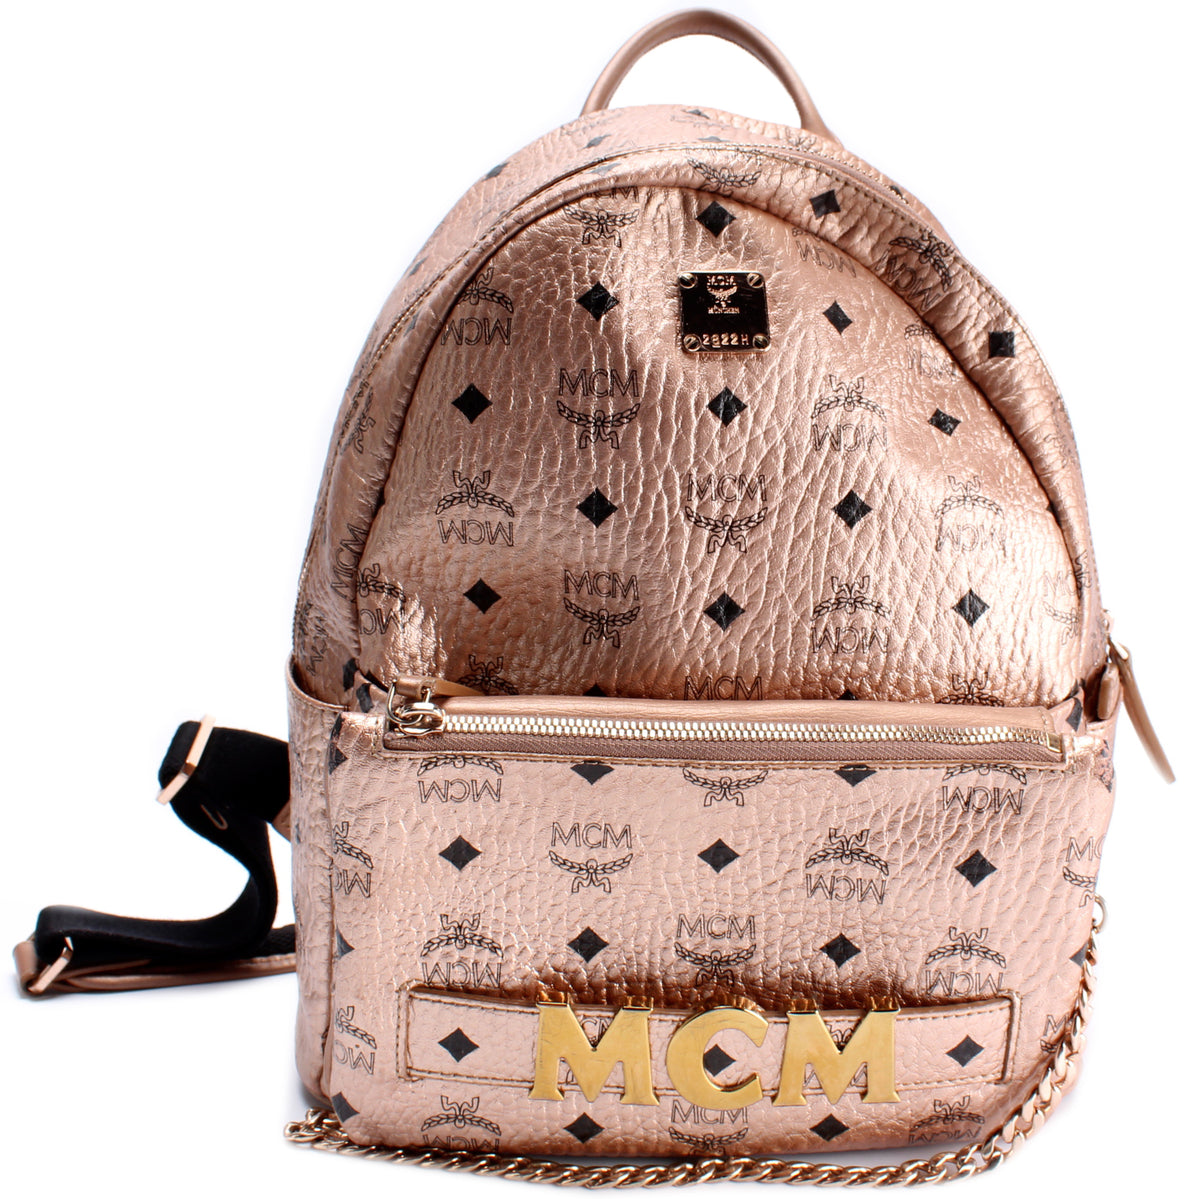 MCM Red STARK TRILOGIE Backpack Removable Shoulder Bag Clutch